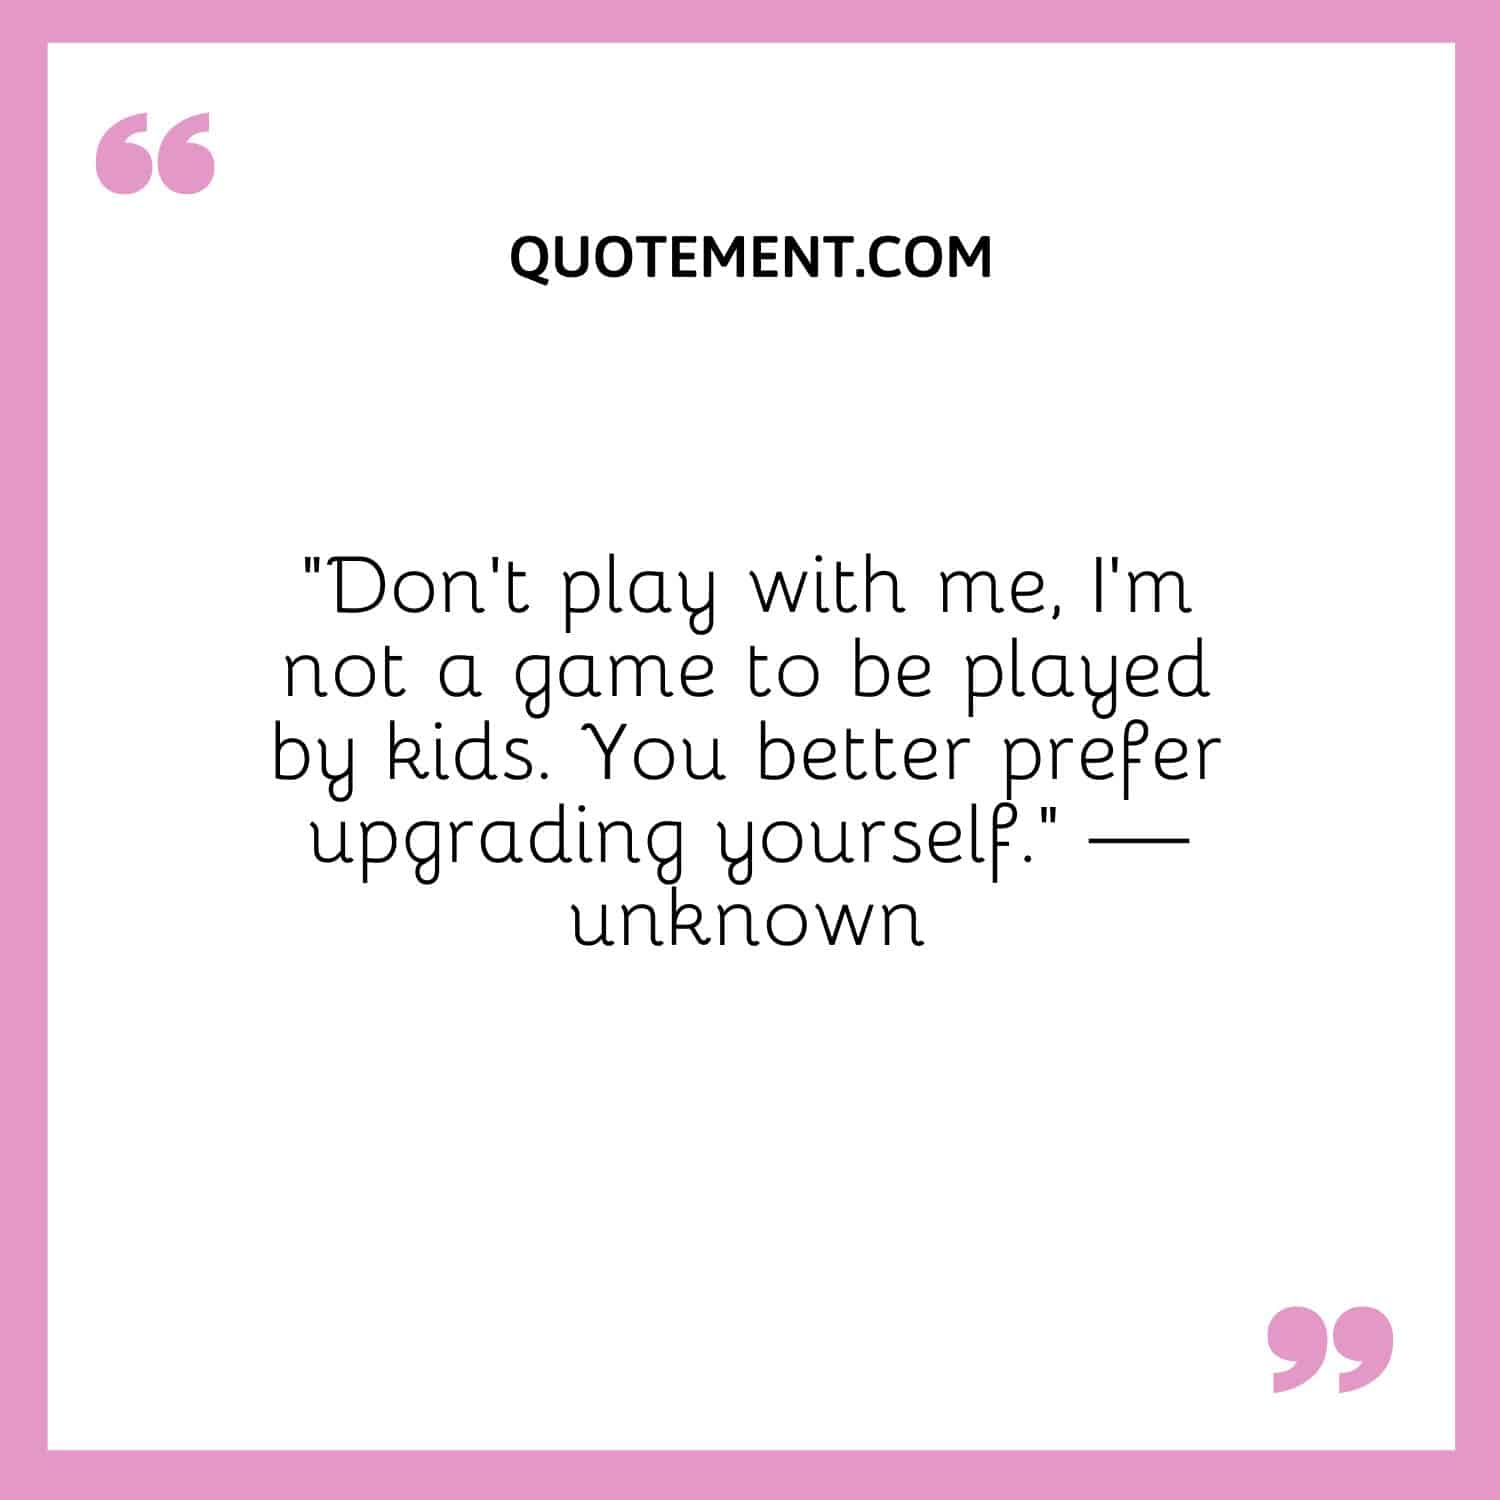 Don’t play with me, I’m not a game to be played by kids